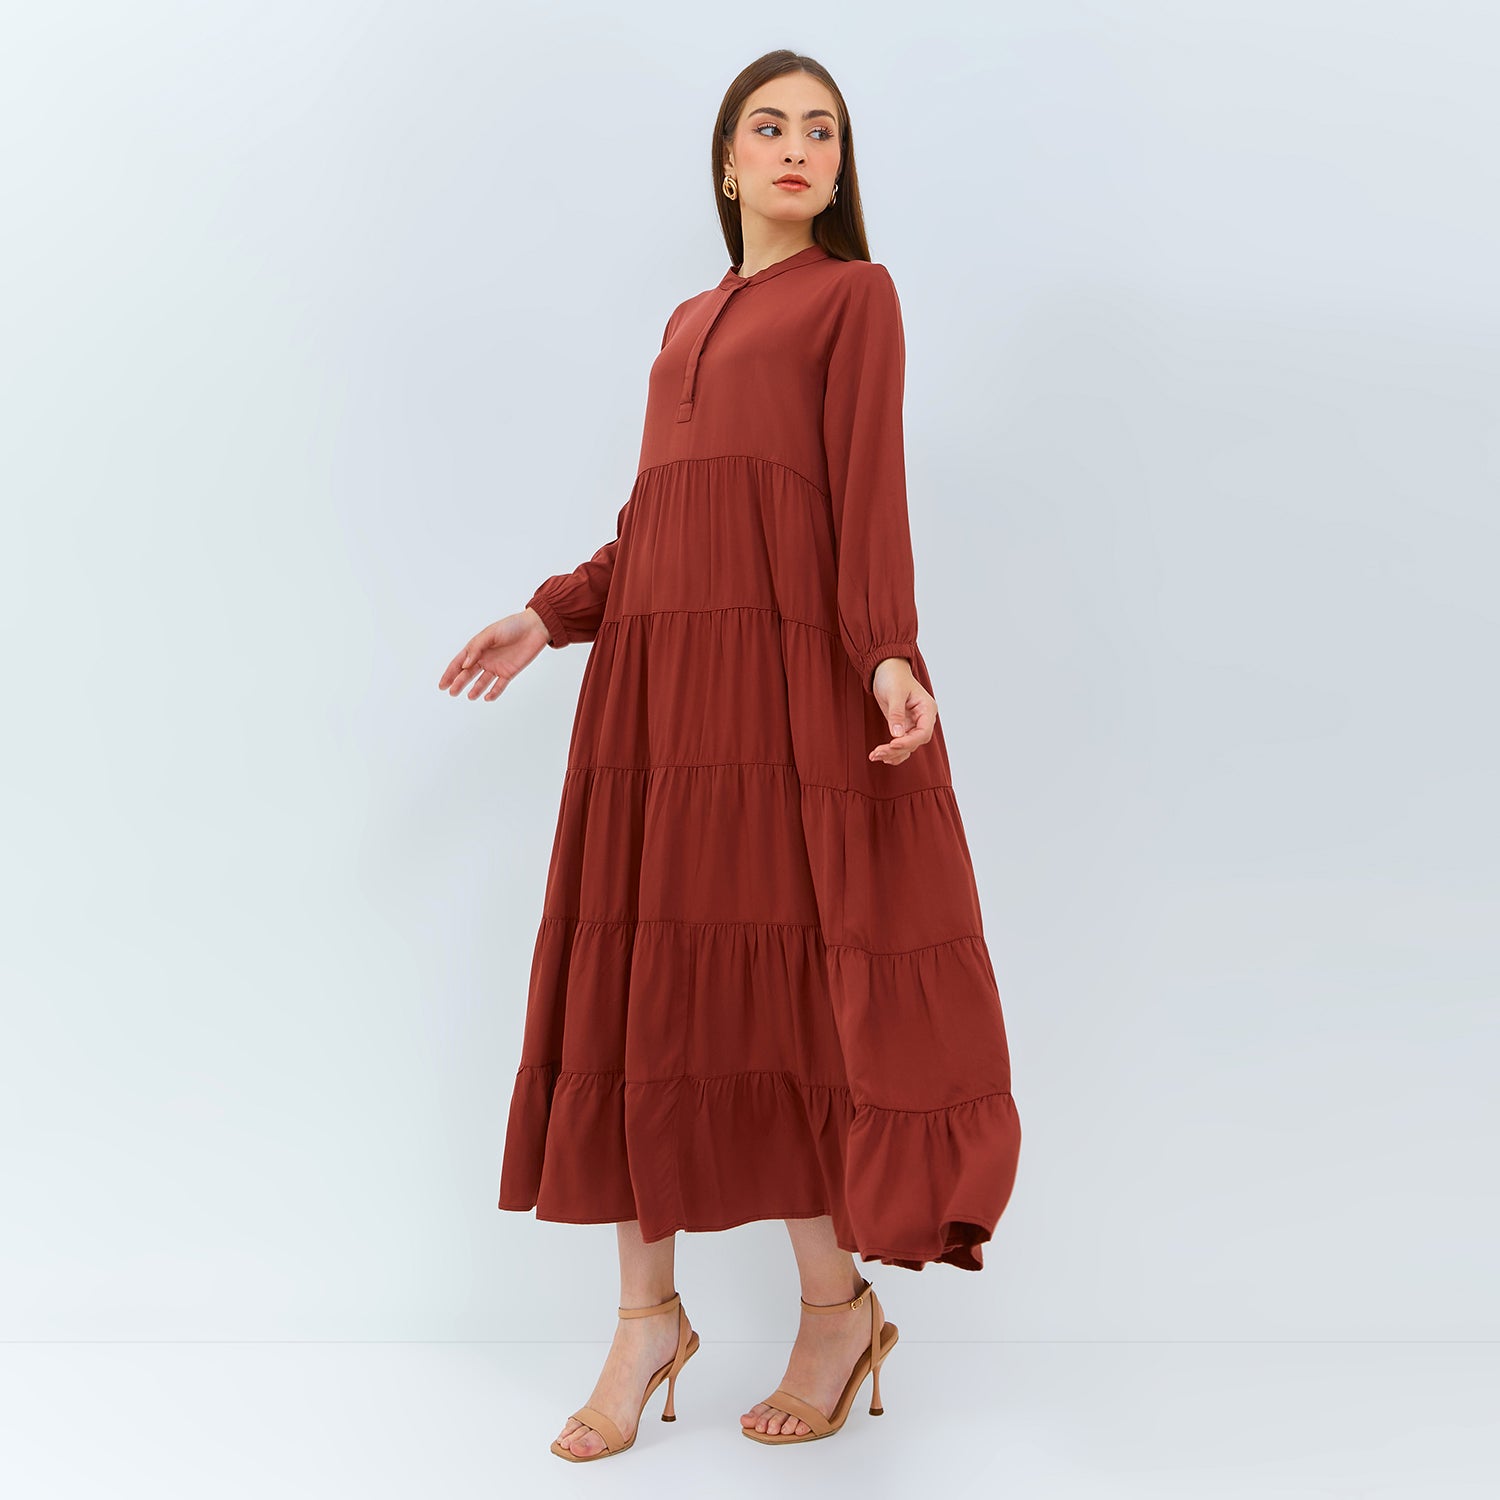 Millenia - Talita Dress Lengan Panjang [MYDRS 05]